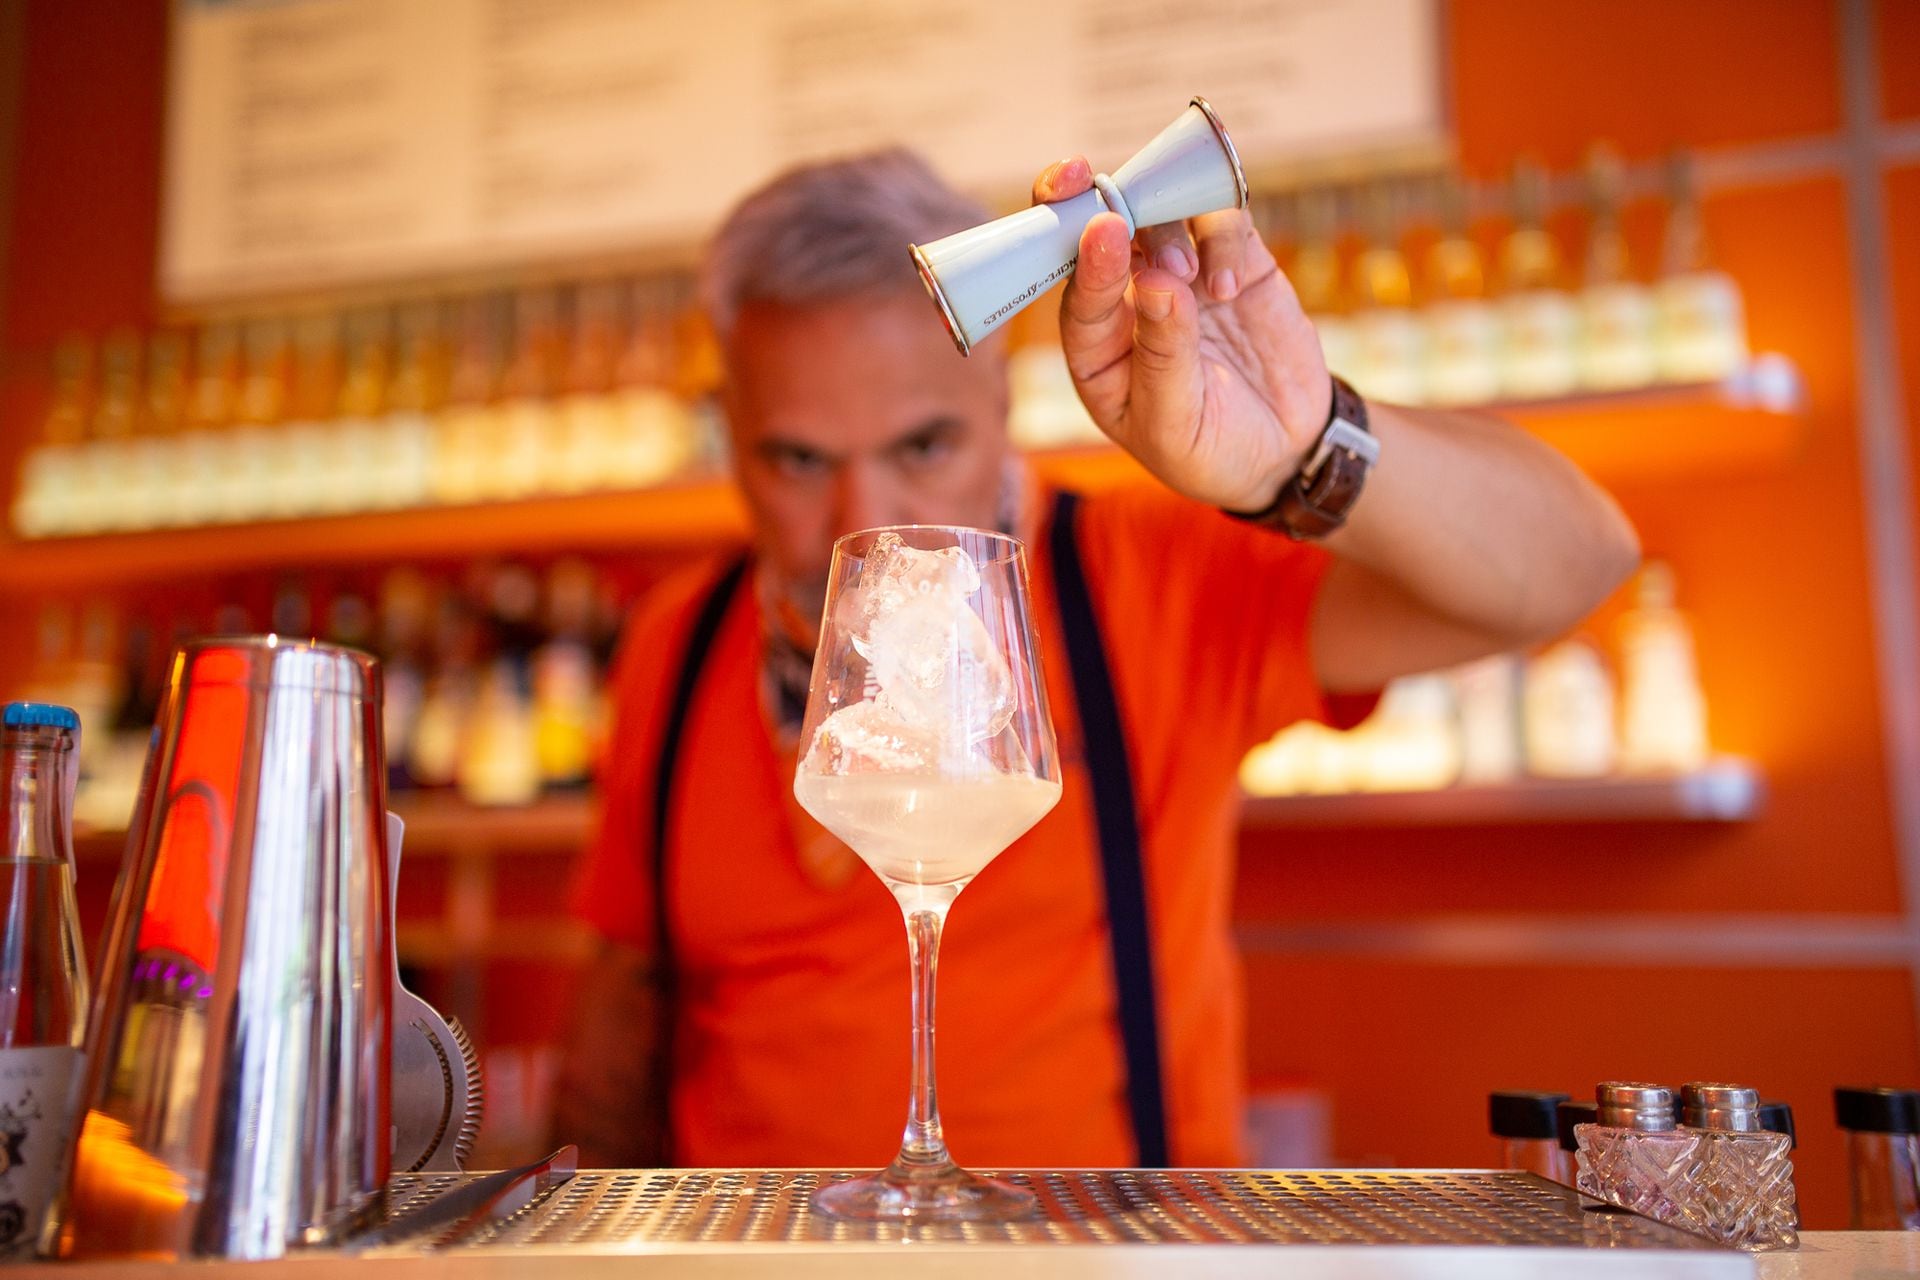 Pablo Piñata, referente de la coctelería en la ciudad, detrás de la barra de la Chintonería, el spot que propone ampliar el consumo de gin con una propuesta descontracturada